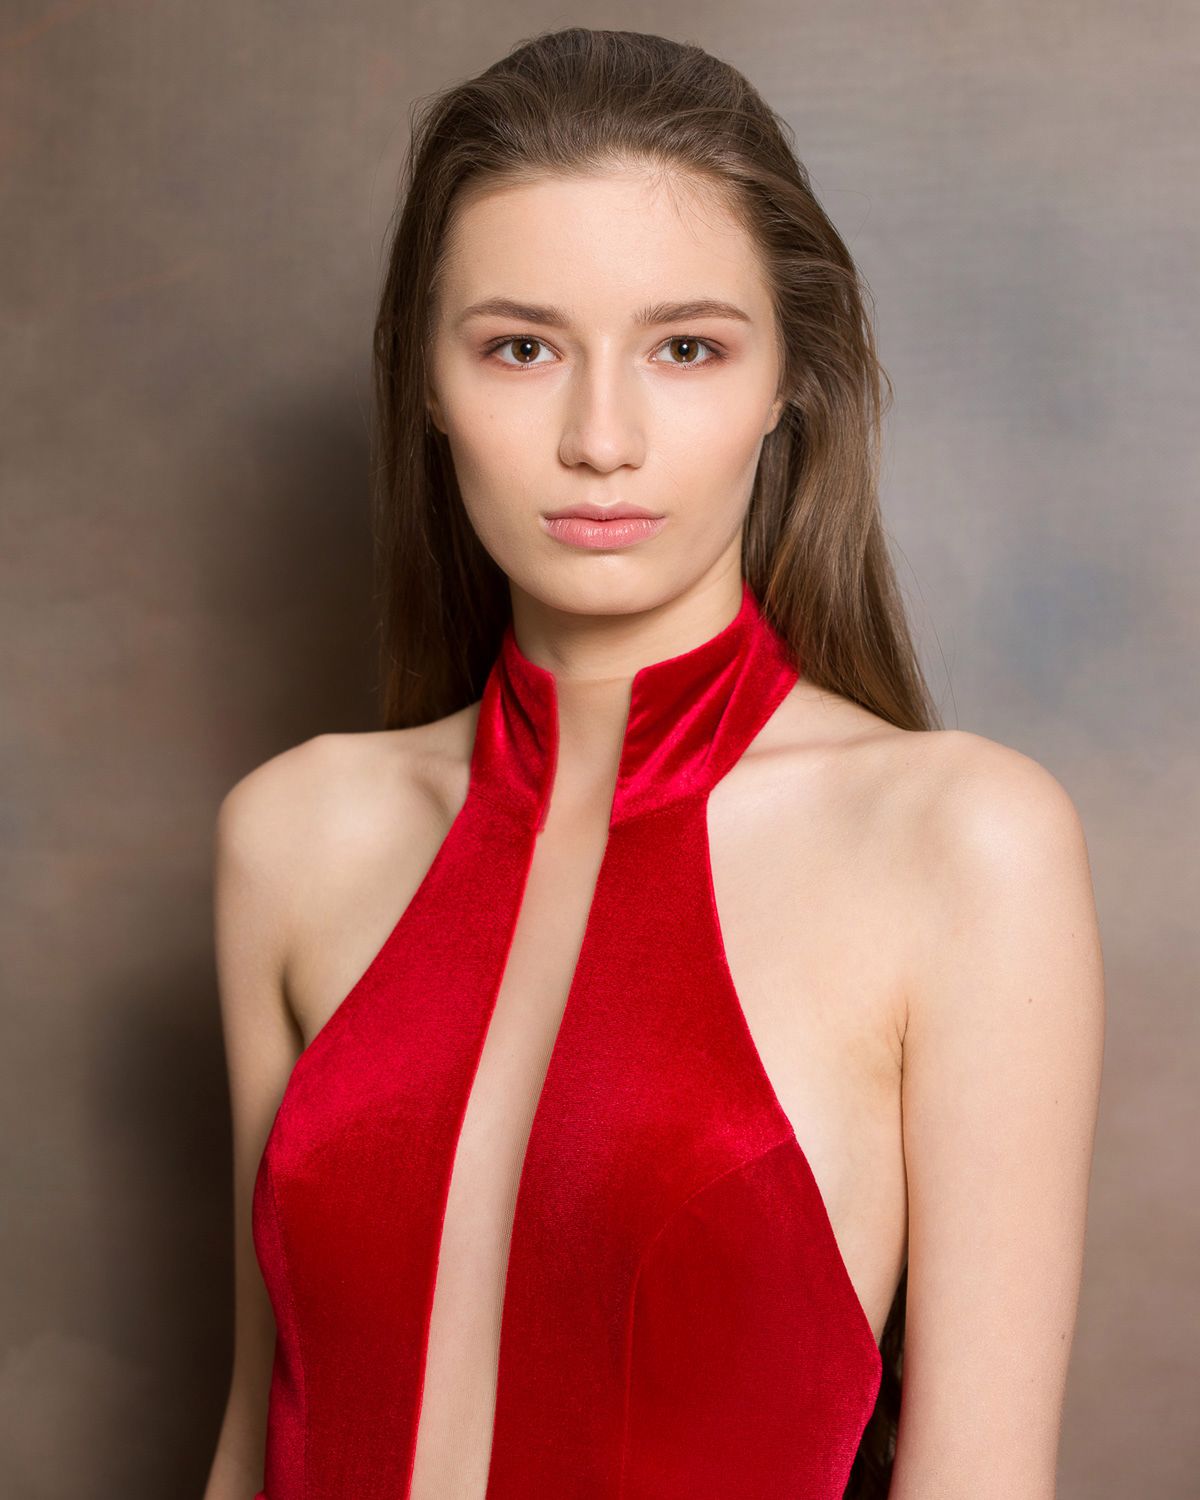 Kandydatka nr 1: Nina Ampulska, 18 lat, Ostrołęka